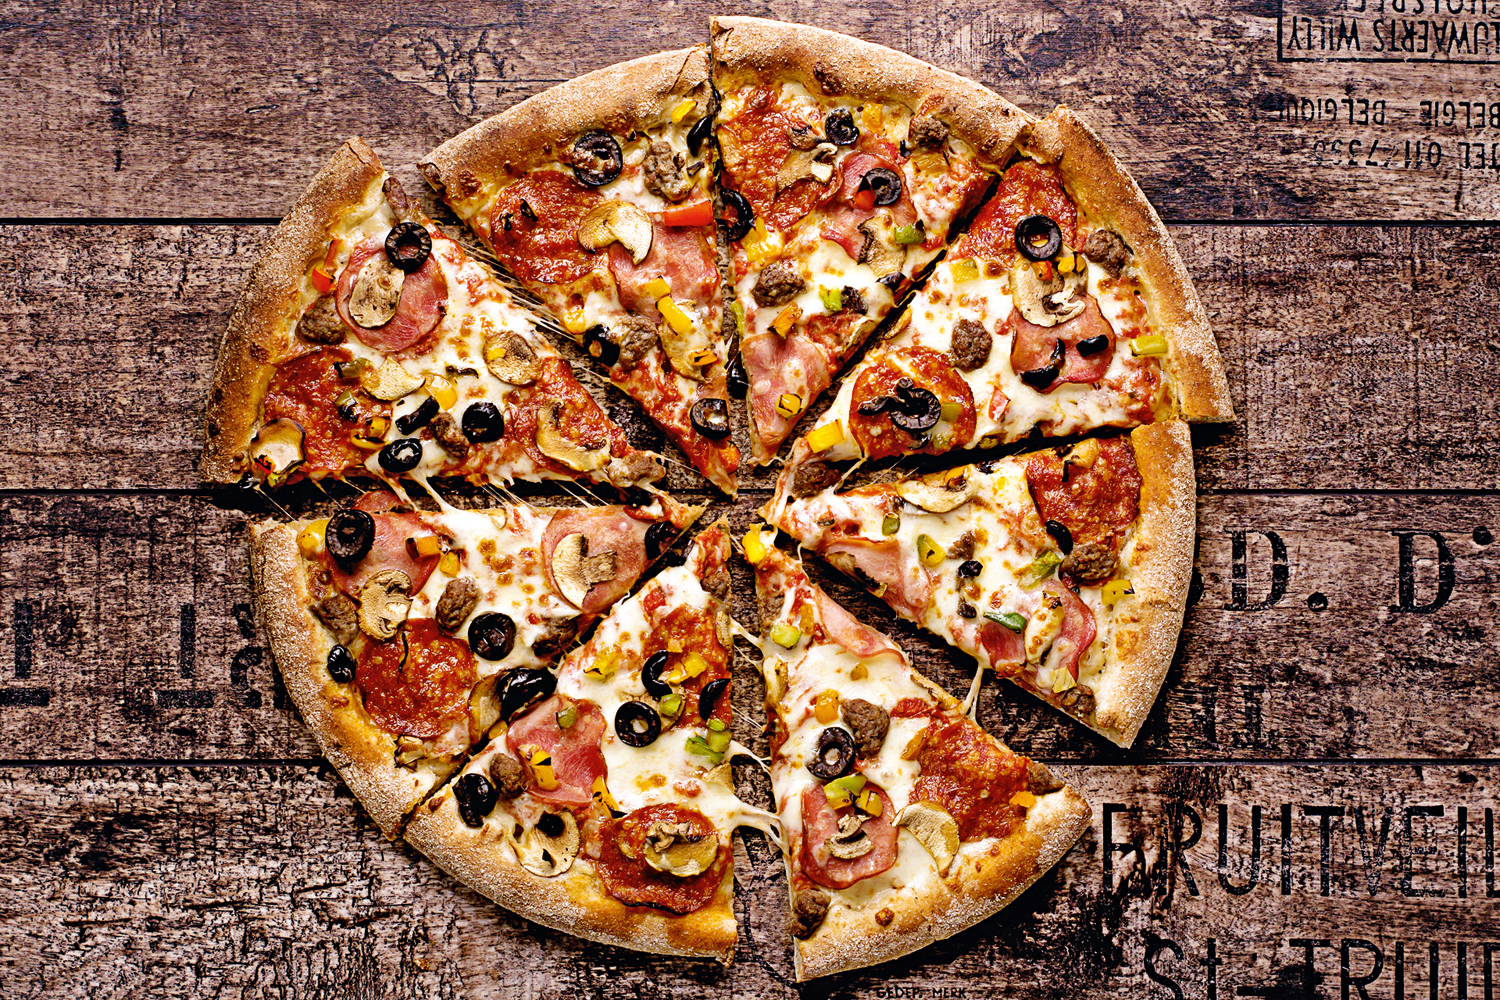 مطعم فريدم بيتزا تعتمد نظام وات ثري ووردز ضمن خدماتها لتوصيل وجبات الطعام